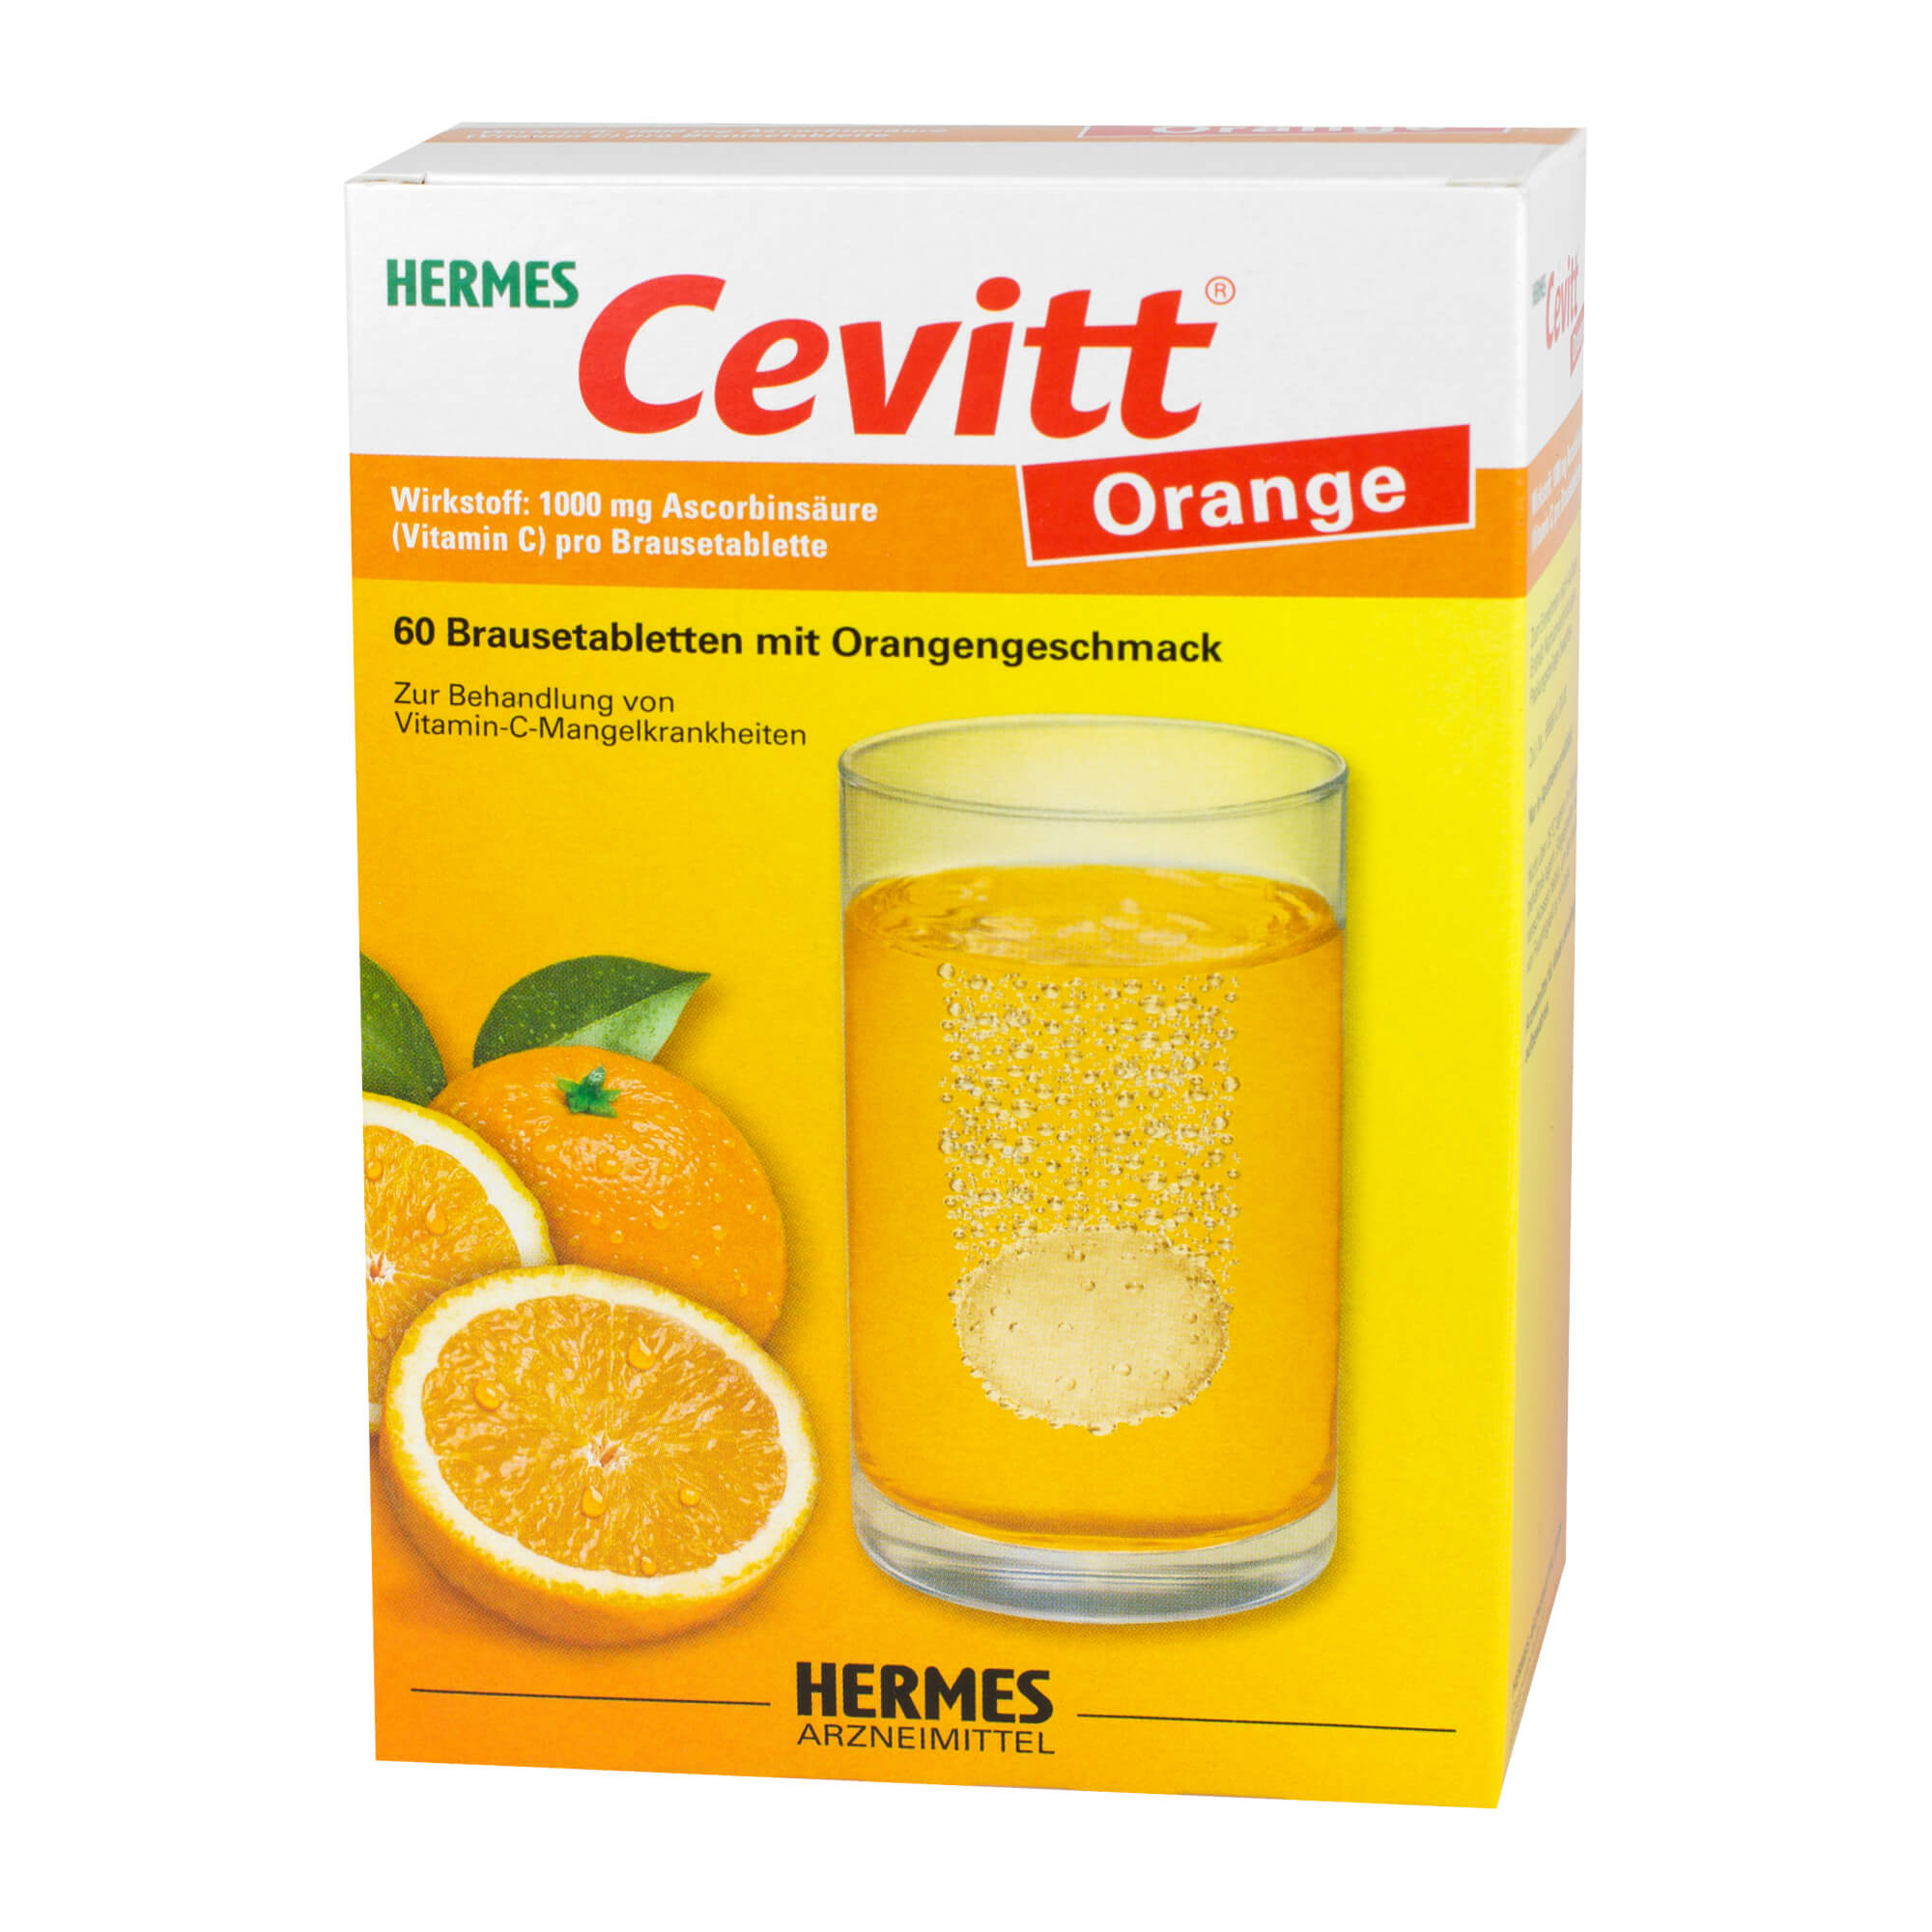 Vitamin-C-Präparat zur Behandlung von Vitamin-C-Mangel-Krankheiten.